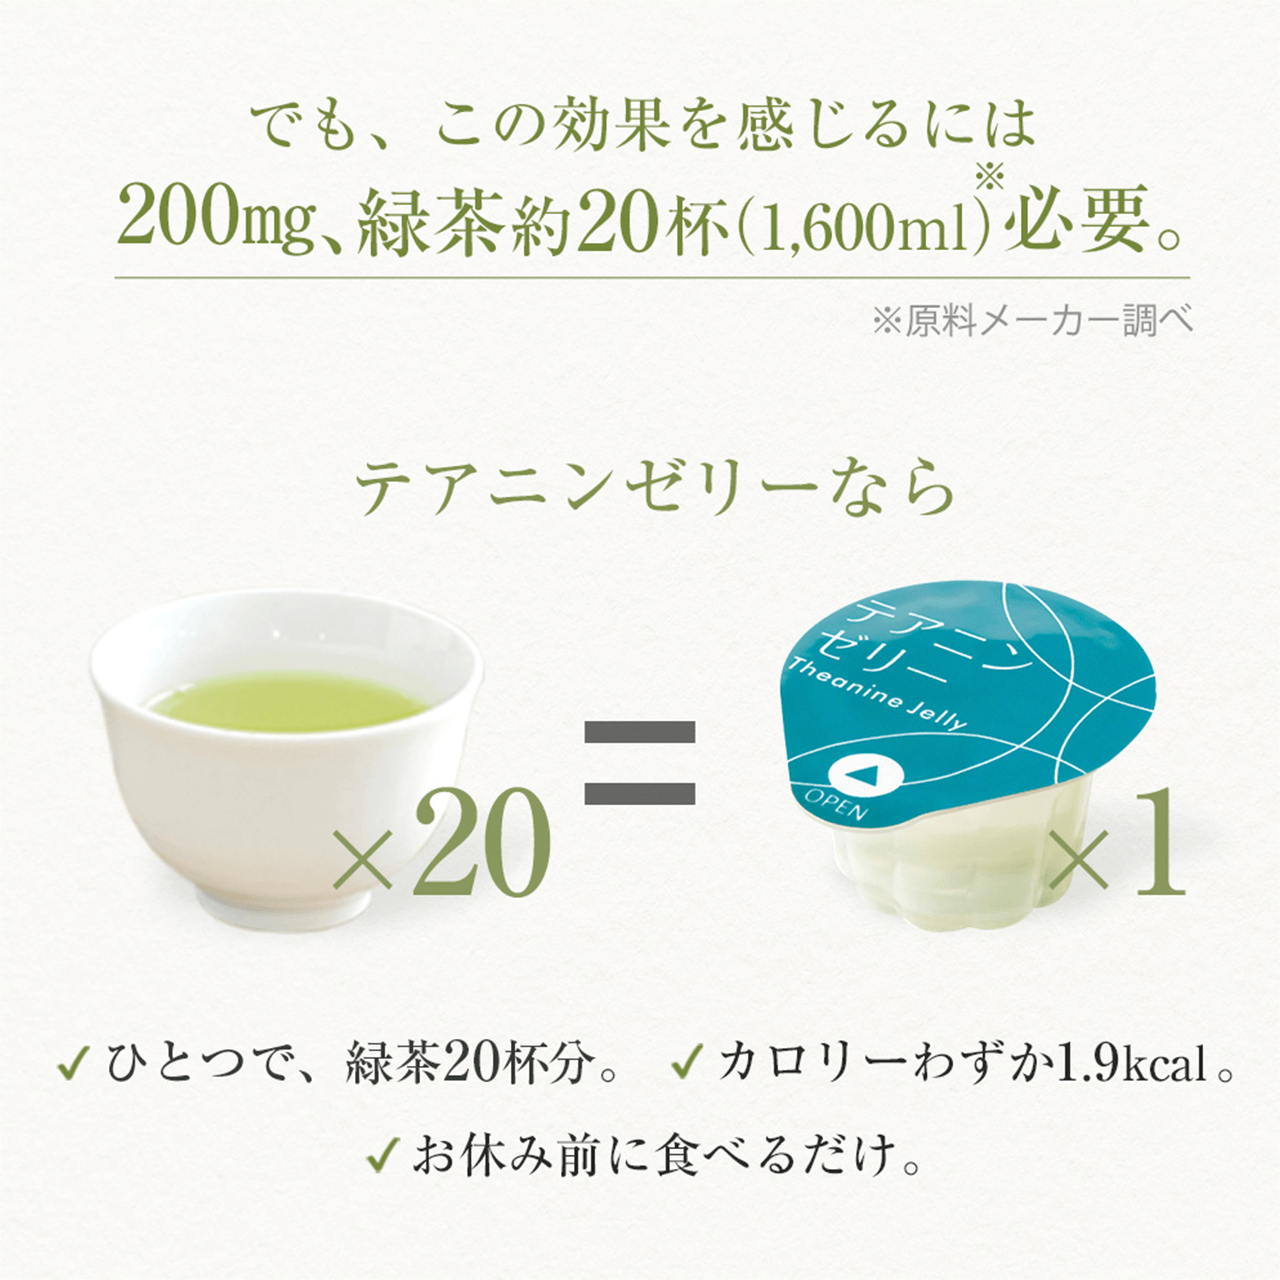 でも、この効果を感じるには200mg、緑茶約20杯（1,600ml）※必要。※原料メーカー調べ　テアニンゼリーならひとつで、緑茶20杯分。カロリーわずか1.9kcal。おやすみ前に食べるだけ。